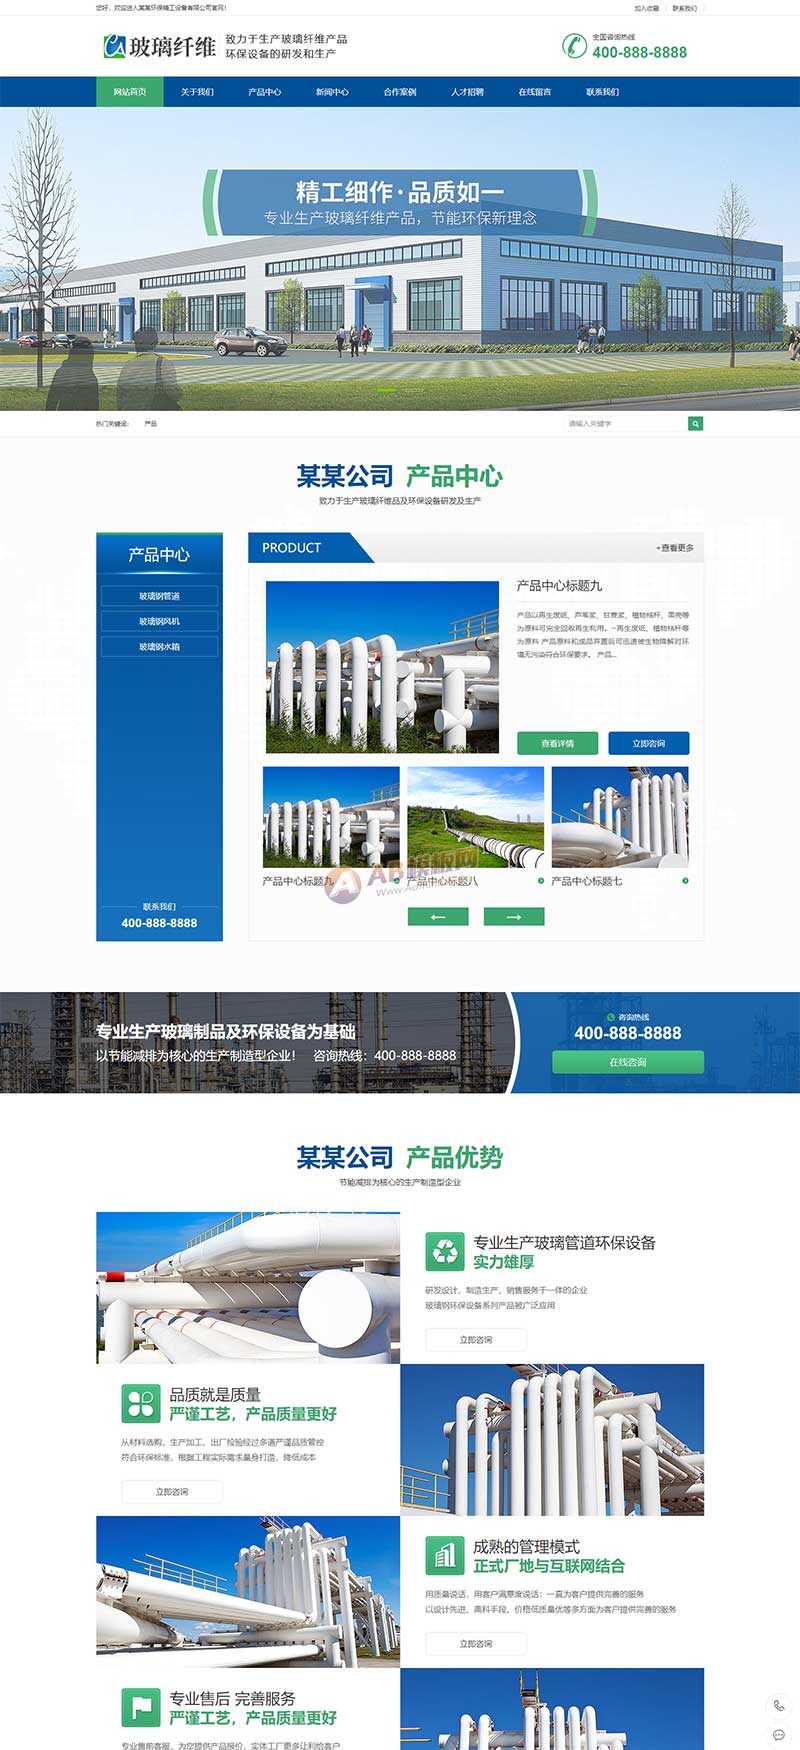 (PC+WAP)营销型环保设备网站源码 蓝色玻璃纤维制品网站pbootcms模板